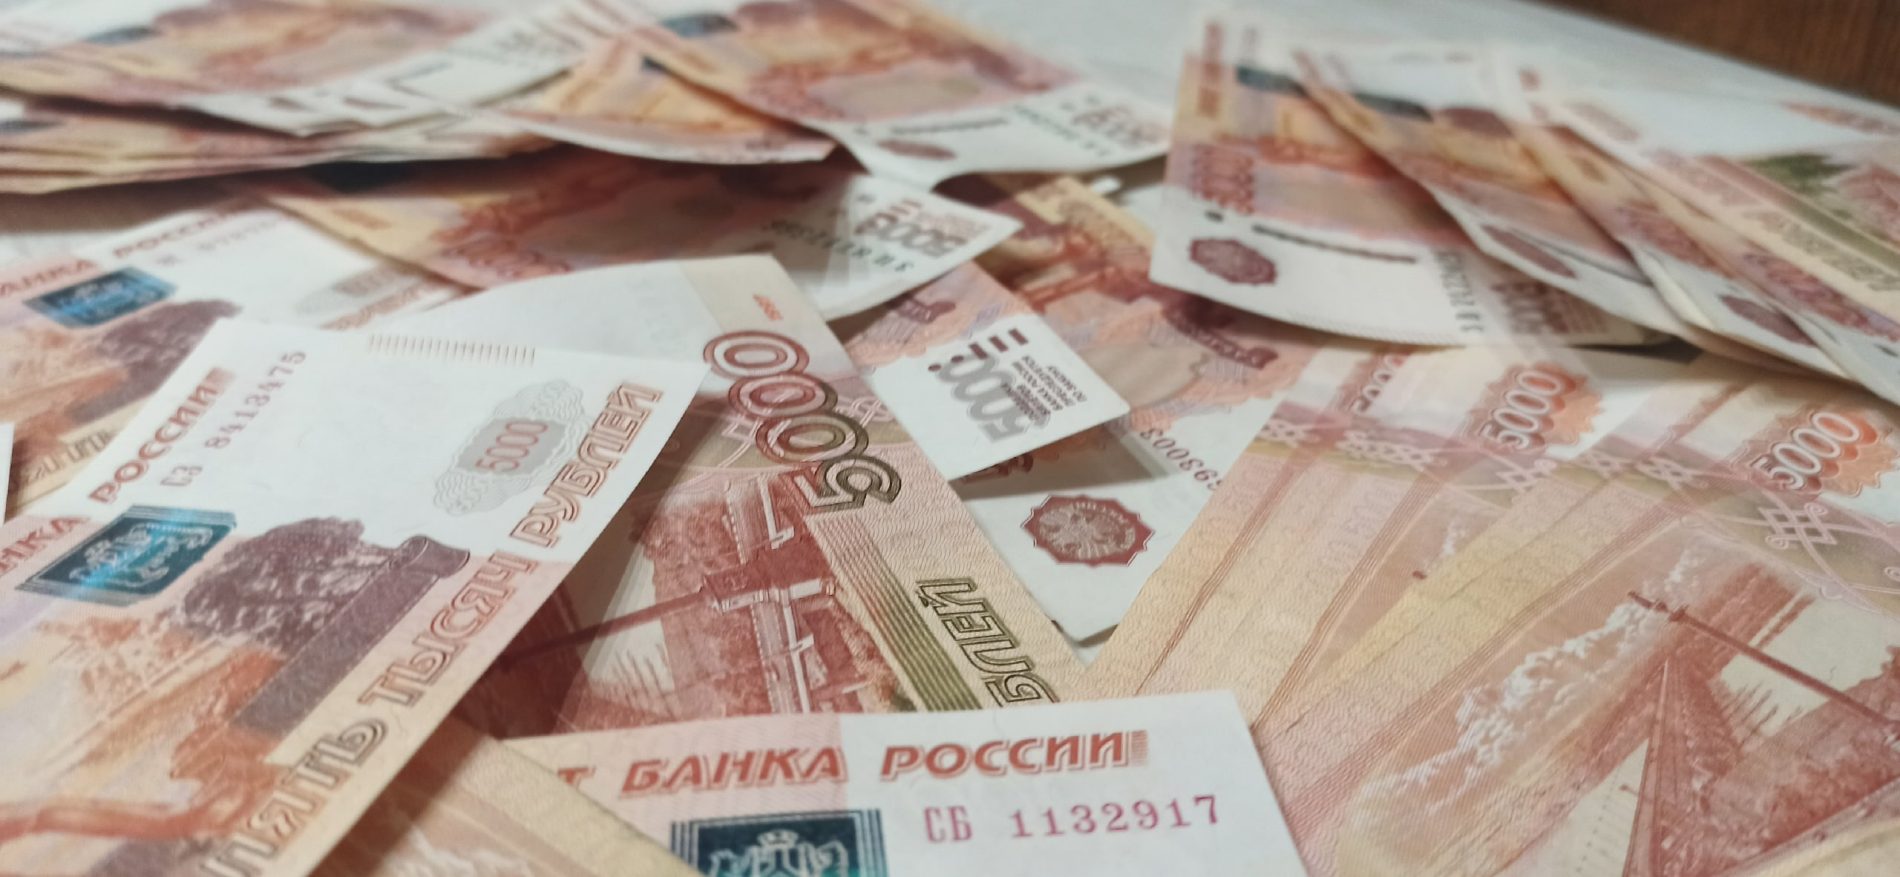 Полмиллиона рублей передала мошенникам напуганная 84-летняя жительница Костромы